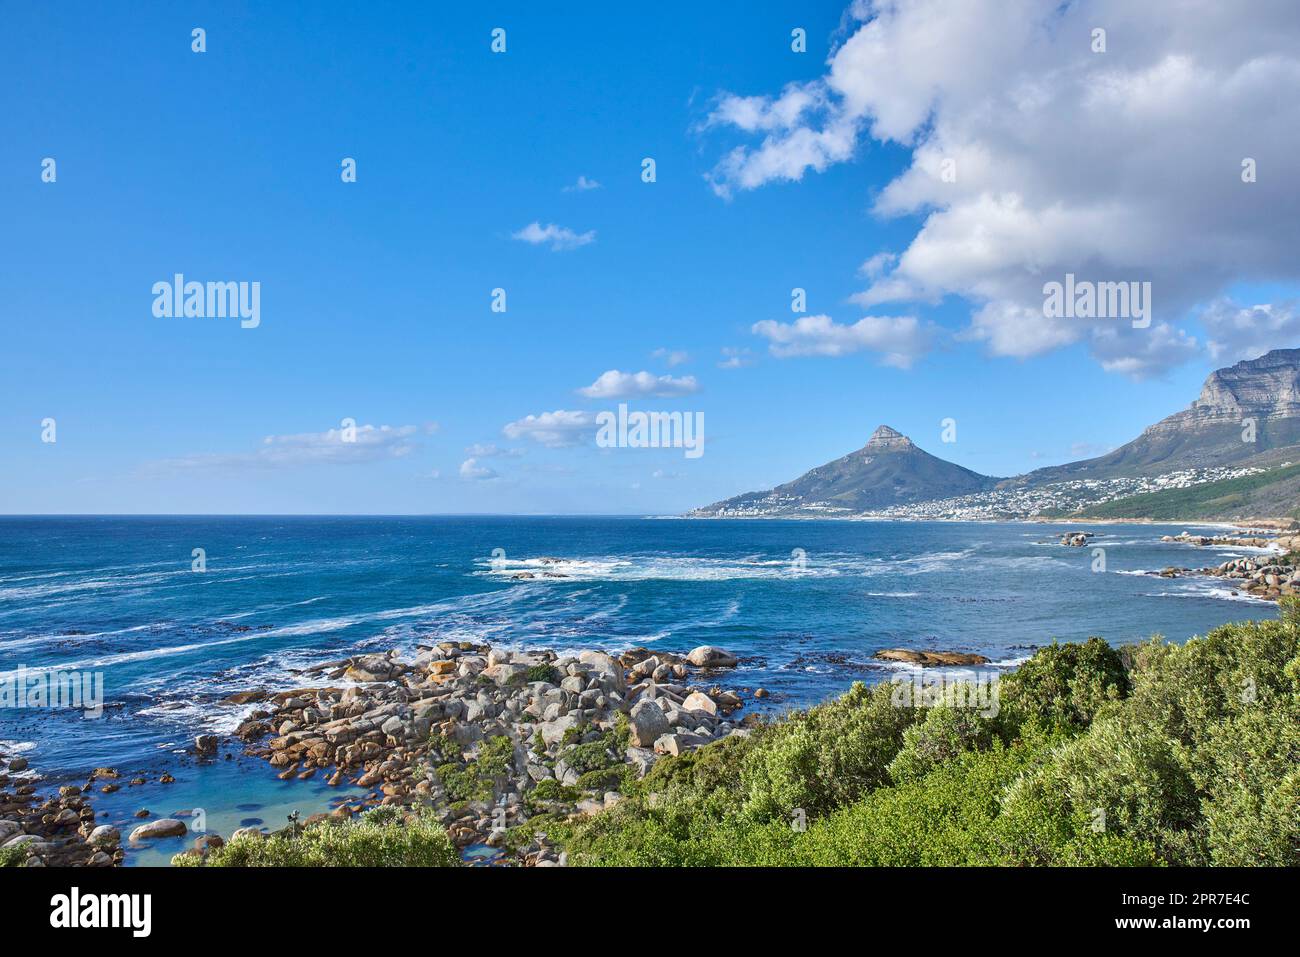 Eine Naturlandschaft mit einem ruhigen Meer und grünen Büschen, mit Lions Head Berg am Horizont, Kapstadt, Südafrika. Landschaft des Ozeans in der Nähe der Berge mit blauem Wolkenhimmel und Kopierraum. Stockfoto